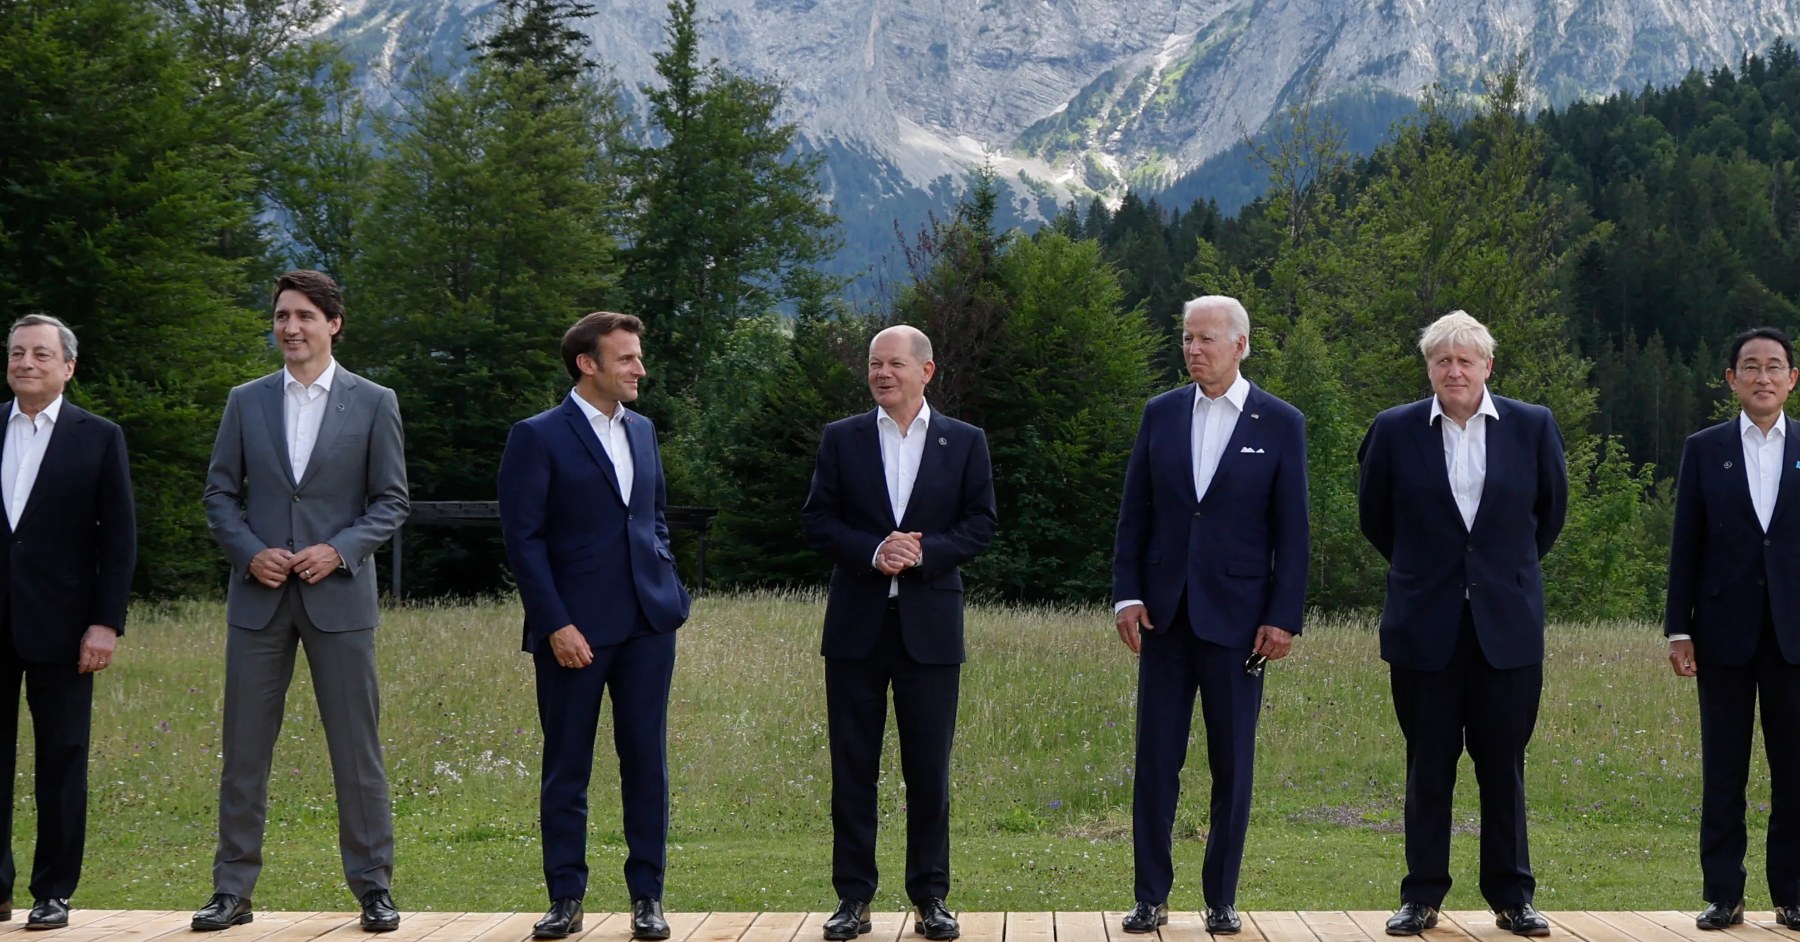 G7-ის წევრების საერთაშორისო შეთანხმება - უარი ჰალსტუხს